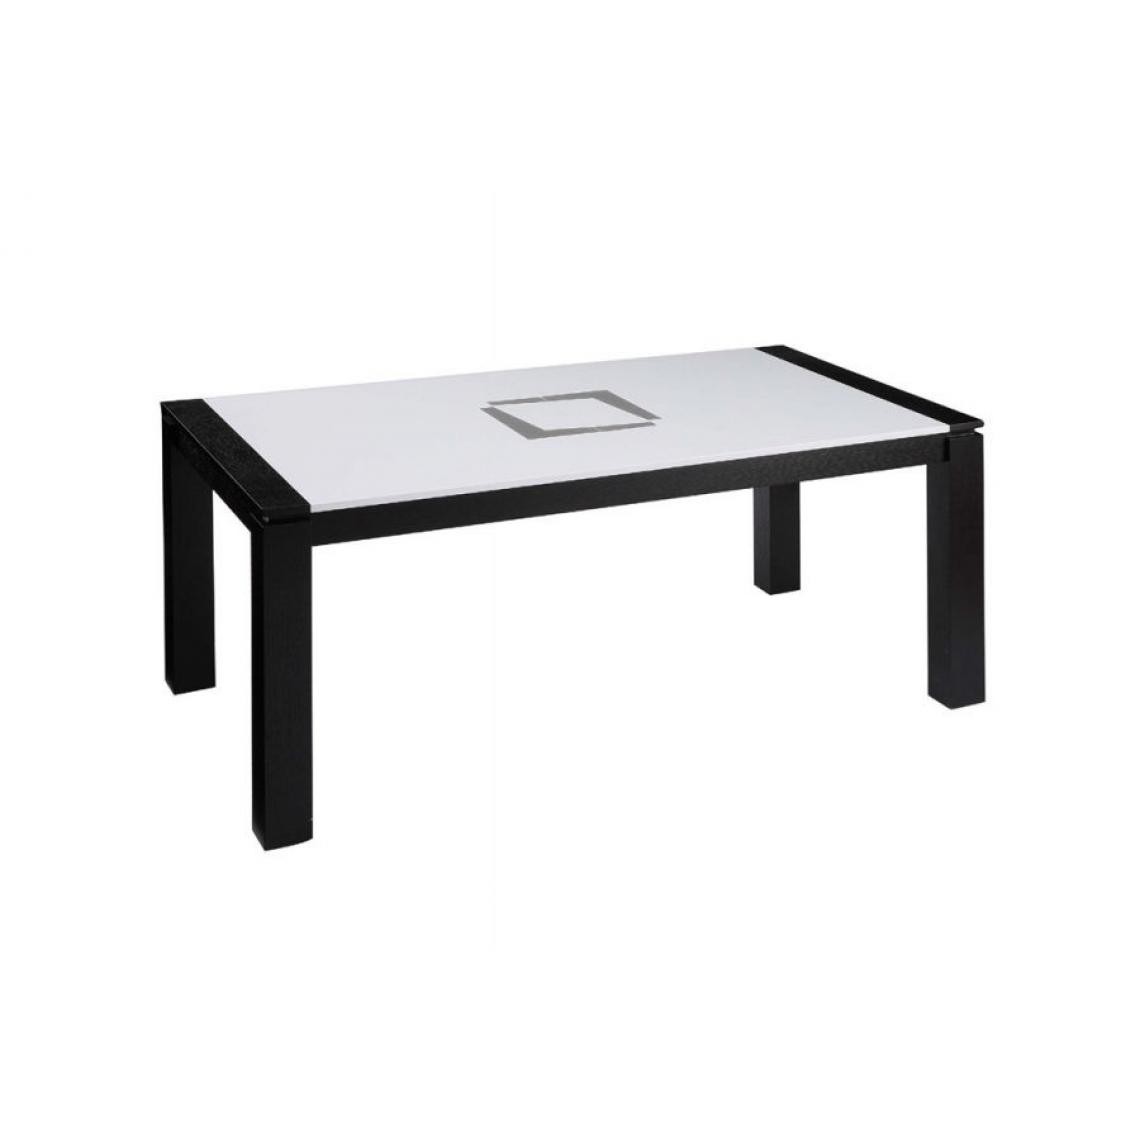 Chloe Design - Table extensible Eclipse - Noir et blanc - Tables à manger